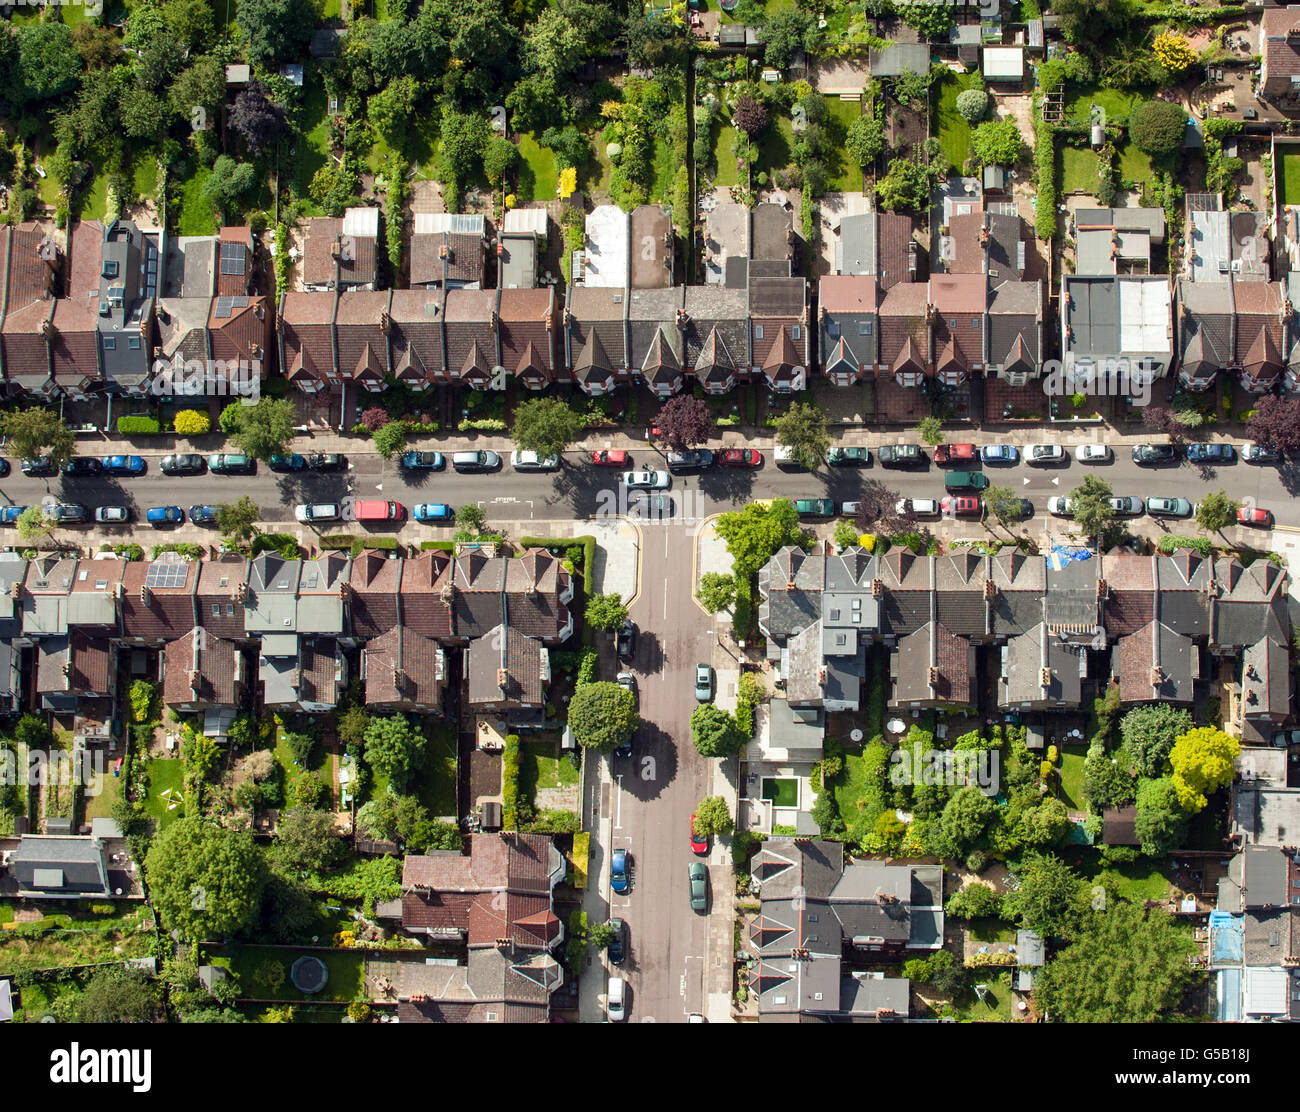 Vista aerea delle case sulle strade residenziali di Muswell Hill, a nord di Londra. PREMERE ASSOCIAZIONE foto. Data immagine: Giovedì 12 luglio 2012. Il credito fotografico dovrebbe essere: Dominic Lipinski/PA Wire Foto Stock